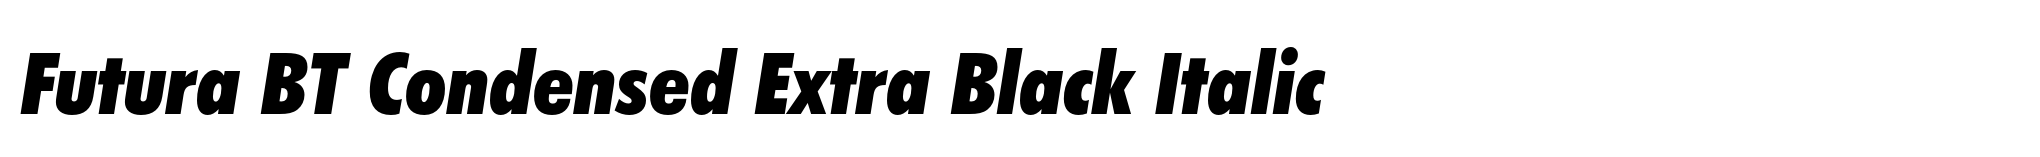 Futura BT Condensed Extra Black Italic image